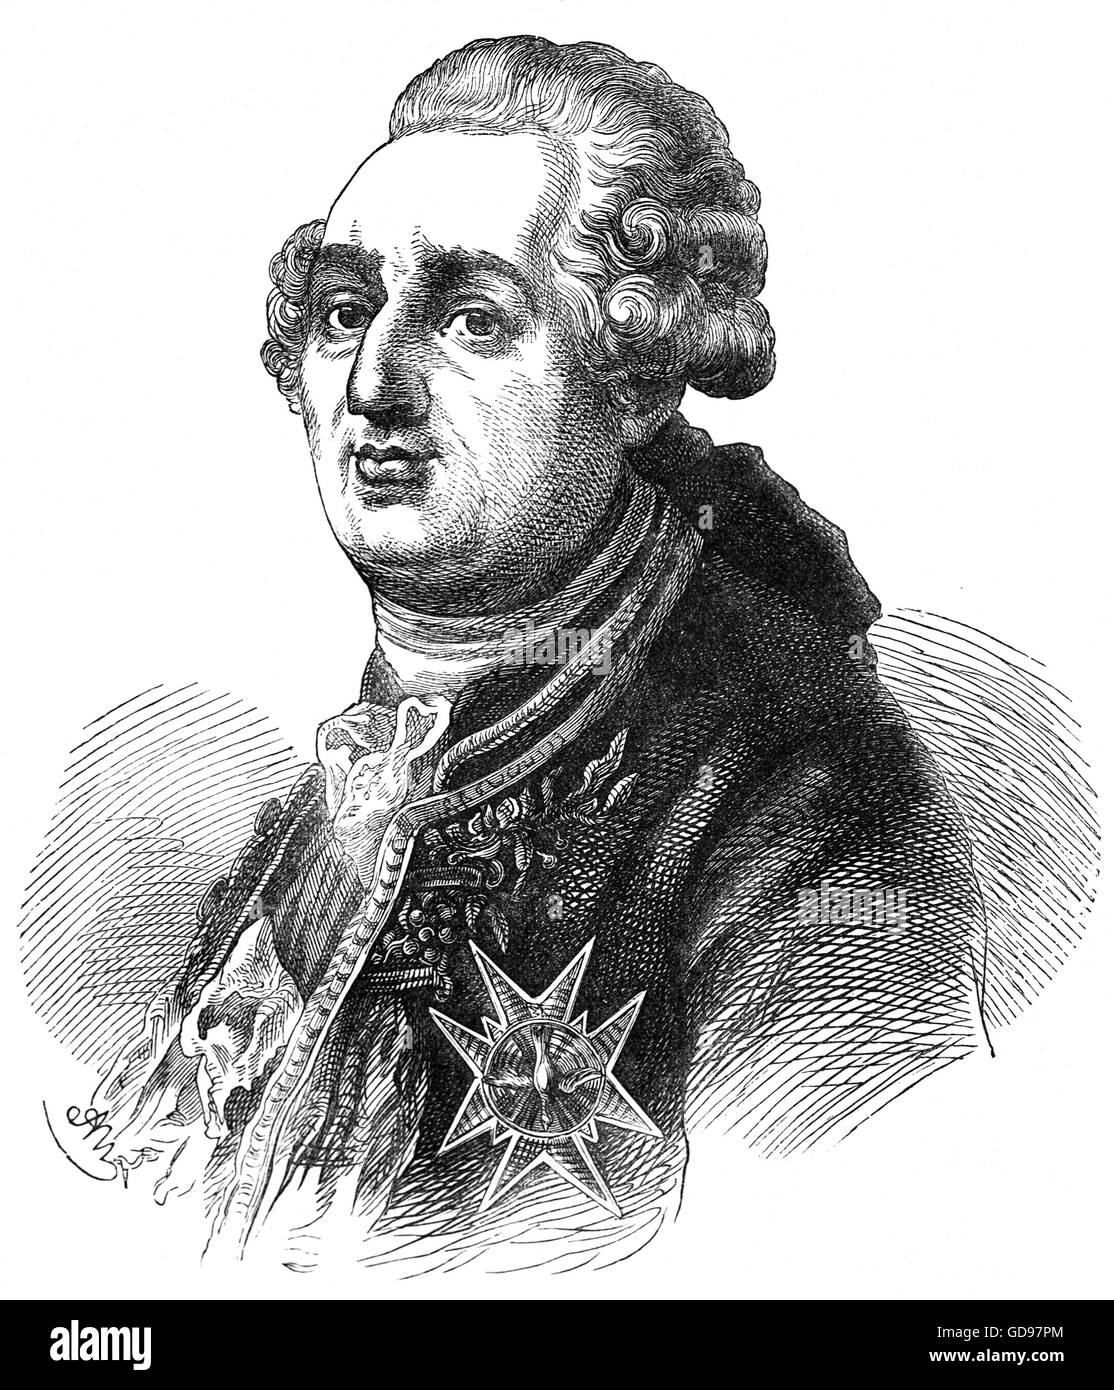 Louis XVI (1754 - 1793), née Louis-Auguste, également connu sous le nom de Louis Capet, a été roi de France de 1774 jusqu'à sa déposition en 1792, bien que son titre officiel après 1791 était le roi des Français. Il a été guillotiné le 21 janvier 1793. Banque D'Images